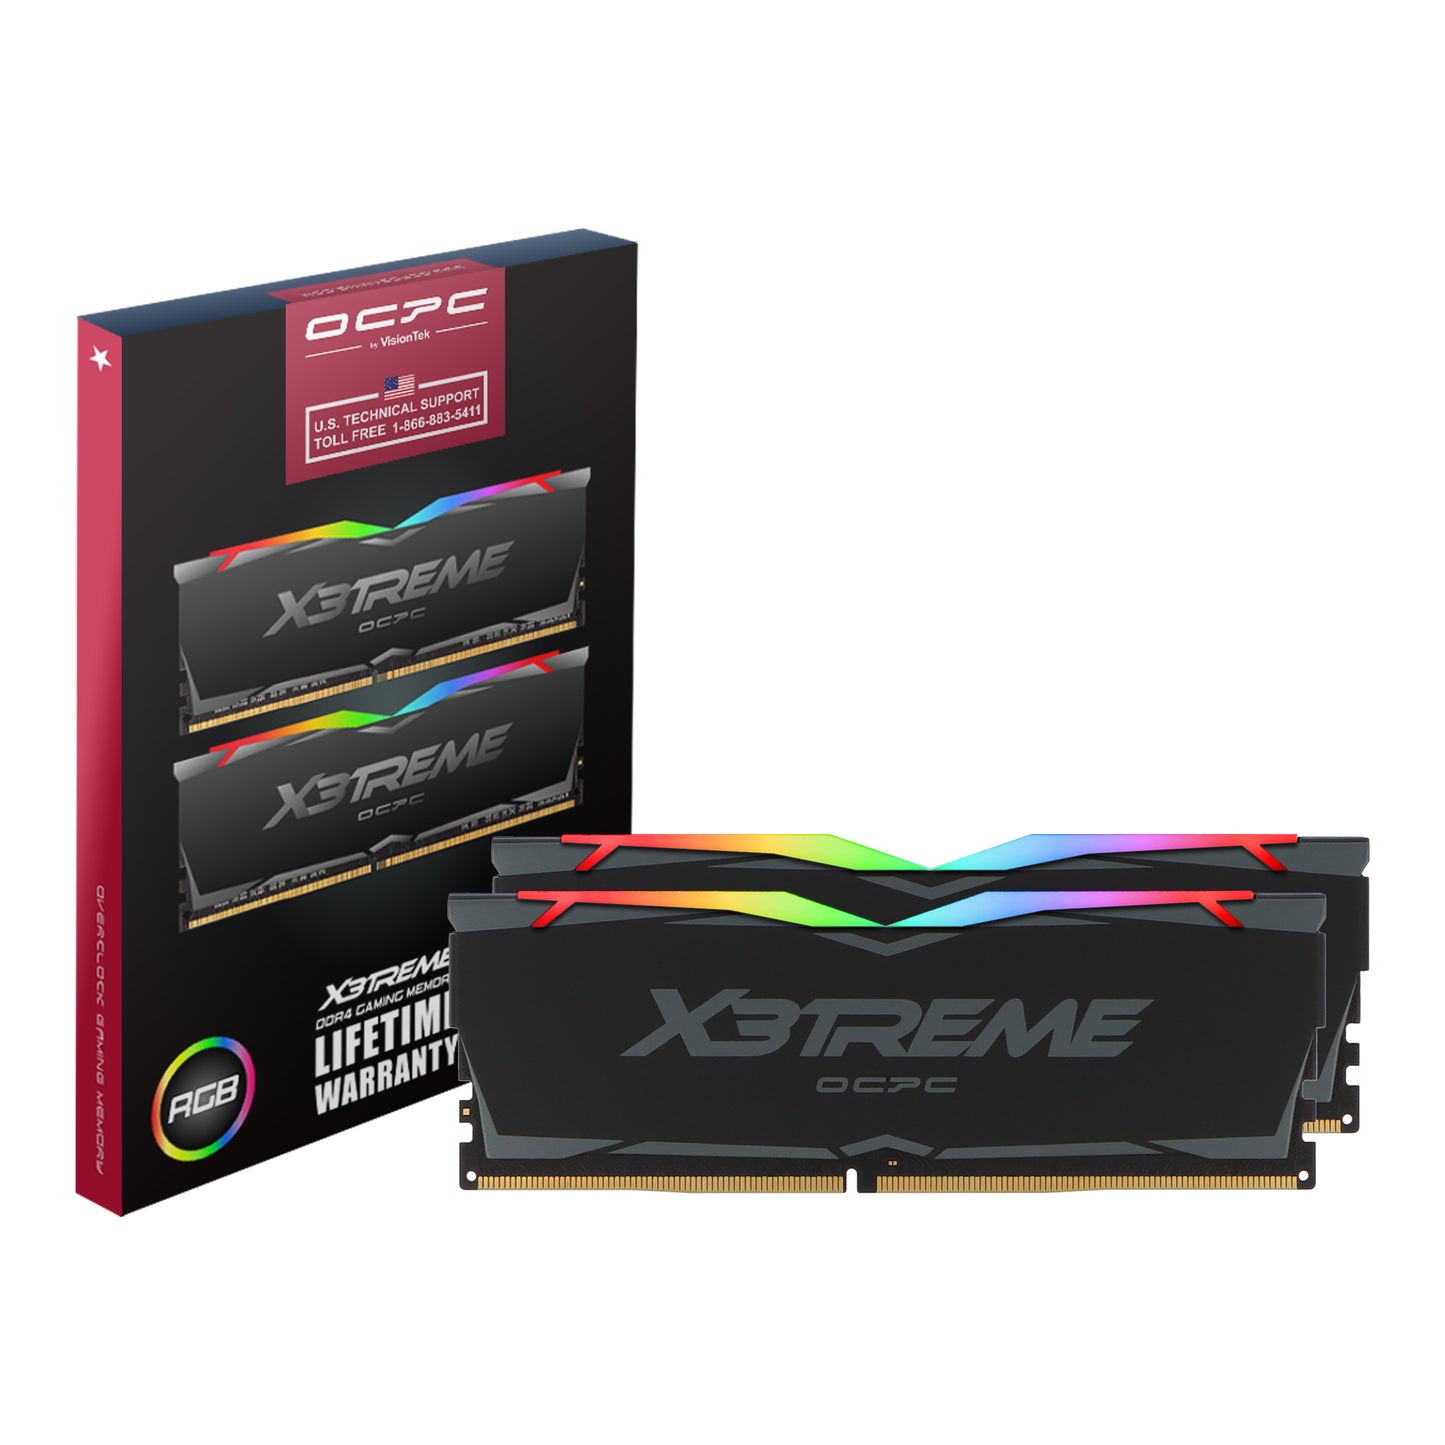 OCPC X3treme RGB DDR4 16GB Kit (2x8GB) - 2666MHz - CL19 - Black